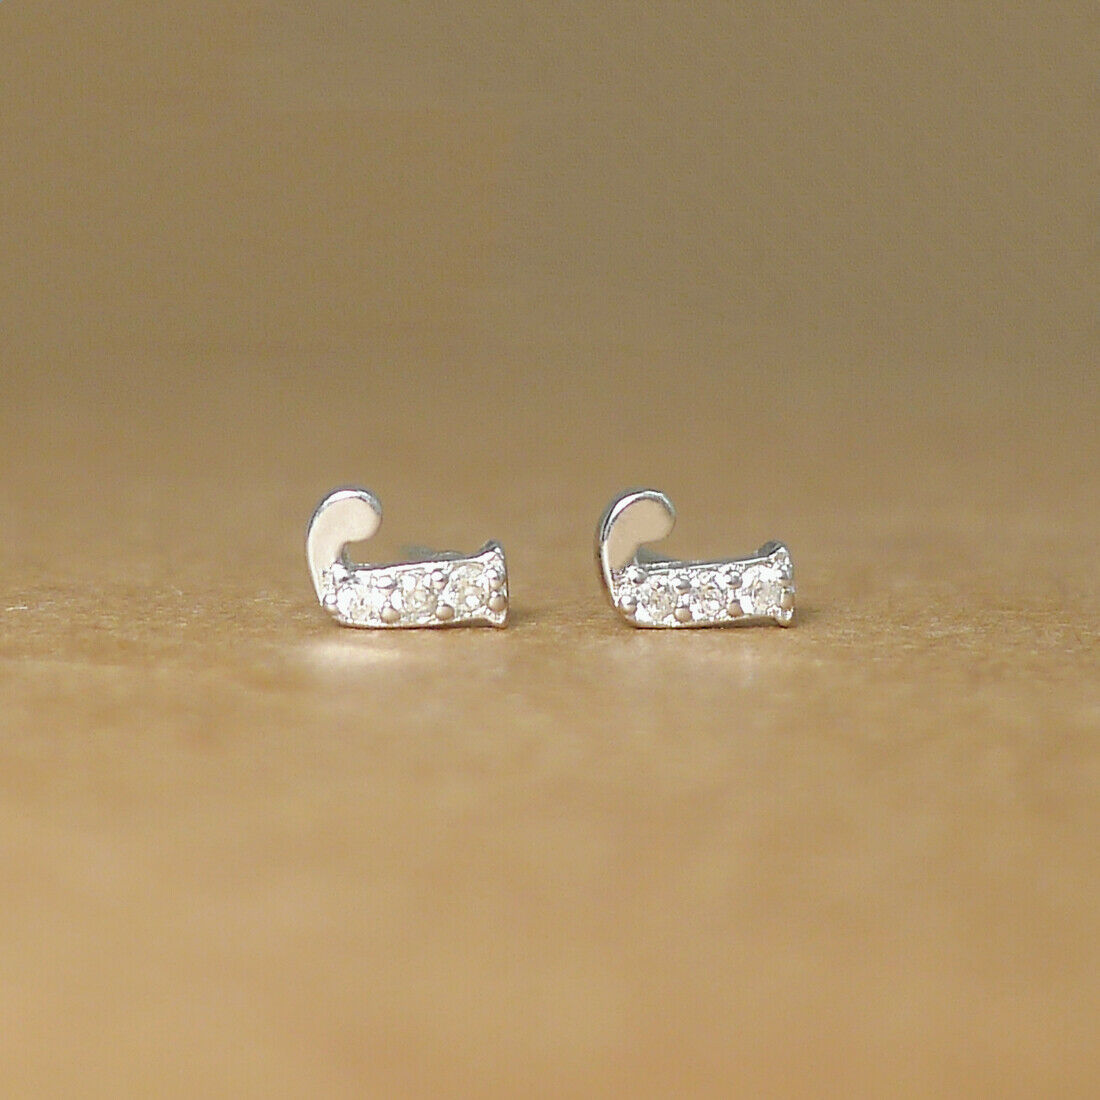 Sterling Silver Paved CZ Initial Stud Earrings for Women - Alphabet Letter A-Z - sugarkittenlondon